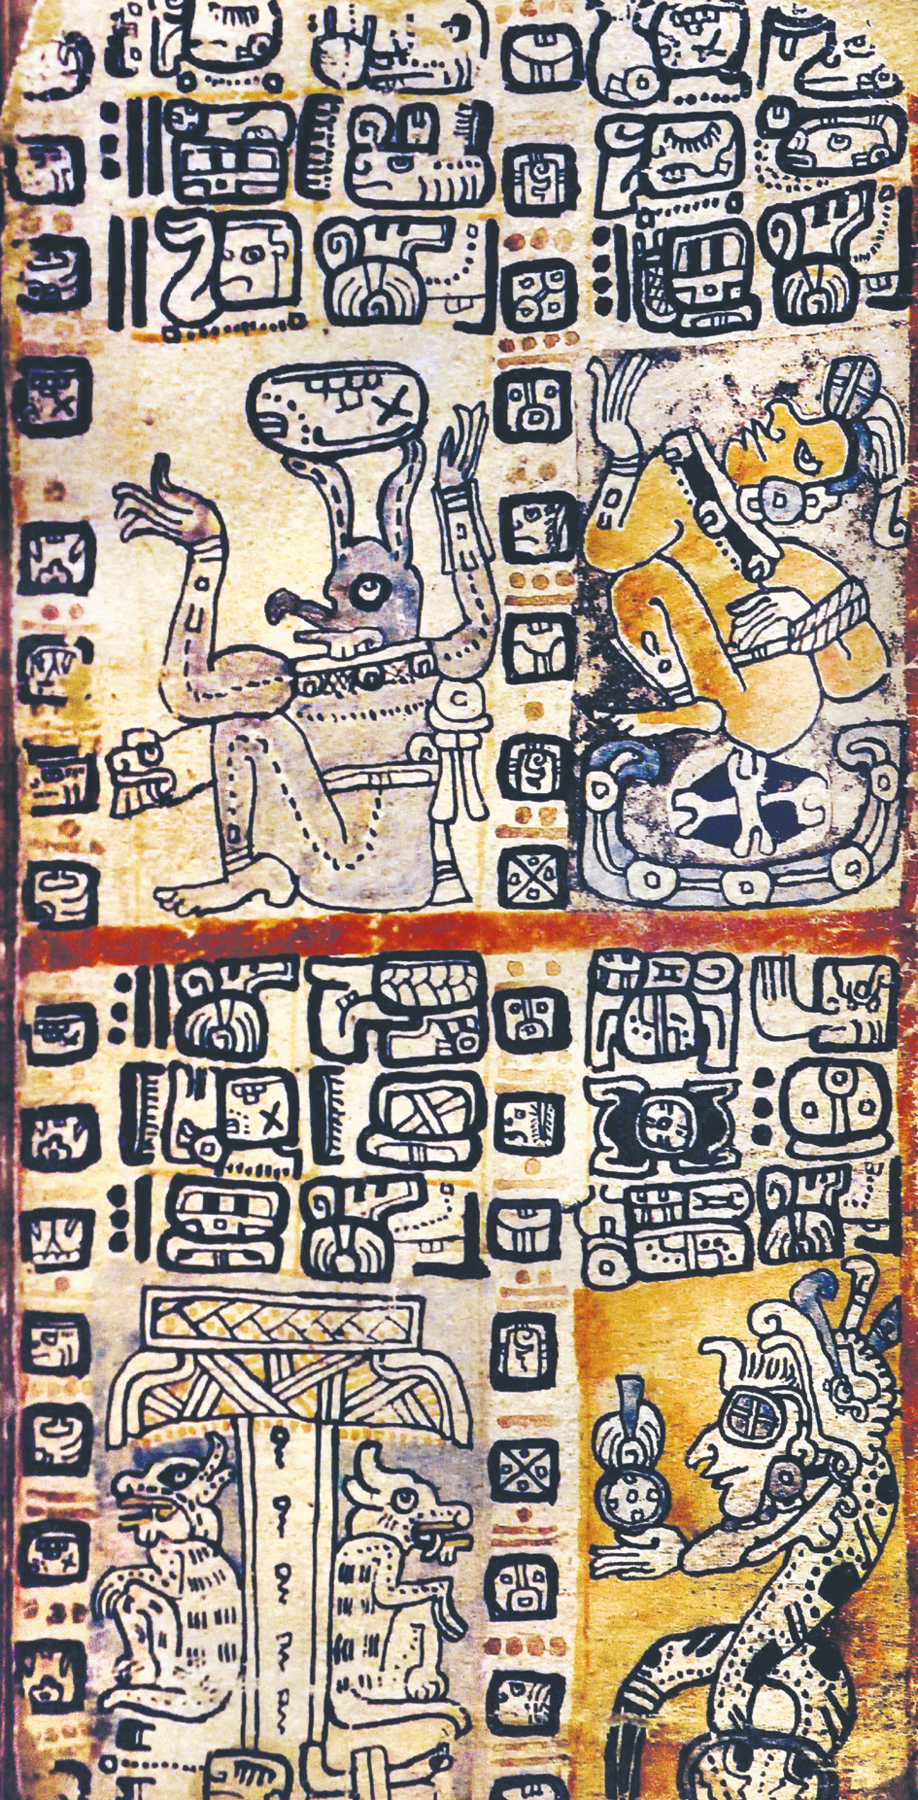 Fotografia. Folha de papel vertical com ilustrações divididas em quatro partes. Em cada uma delas, a representação de uma criatura diferente. Acima, à esquerda, um ser com grandes orelhas, bico, braços e pernas. À direita, um ser com rosto humano e corpo retorcido. Abaixo, à esquerda, dois seres com rosto e corpo de animal, sentados de costas um para o outro. À direita, uma grande serpente com rosto humano.  Ao redor de cada uma das criaturas, diversos símbolos da escrita maia agrupados.